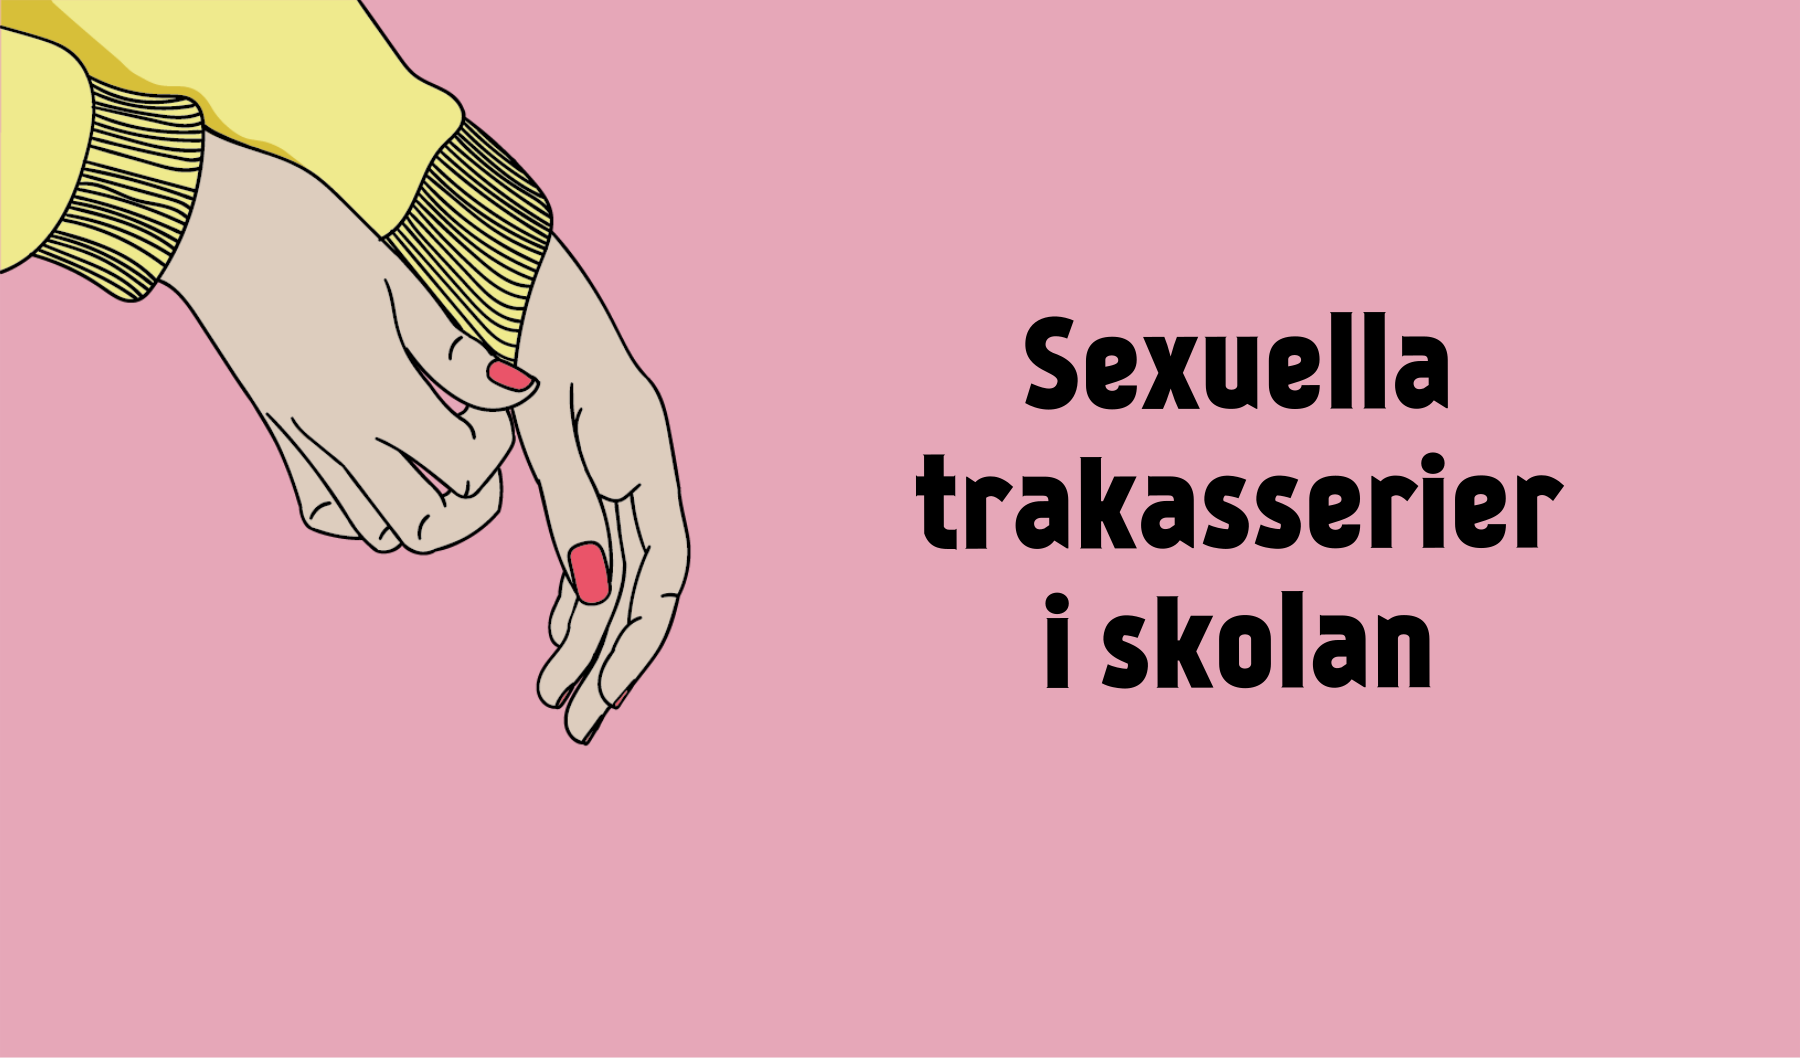 Texten "Sexuella trakasserier i skolan" och en illustration över en hand som drar ner ärmen på sin tröja